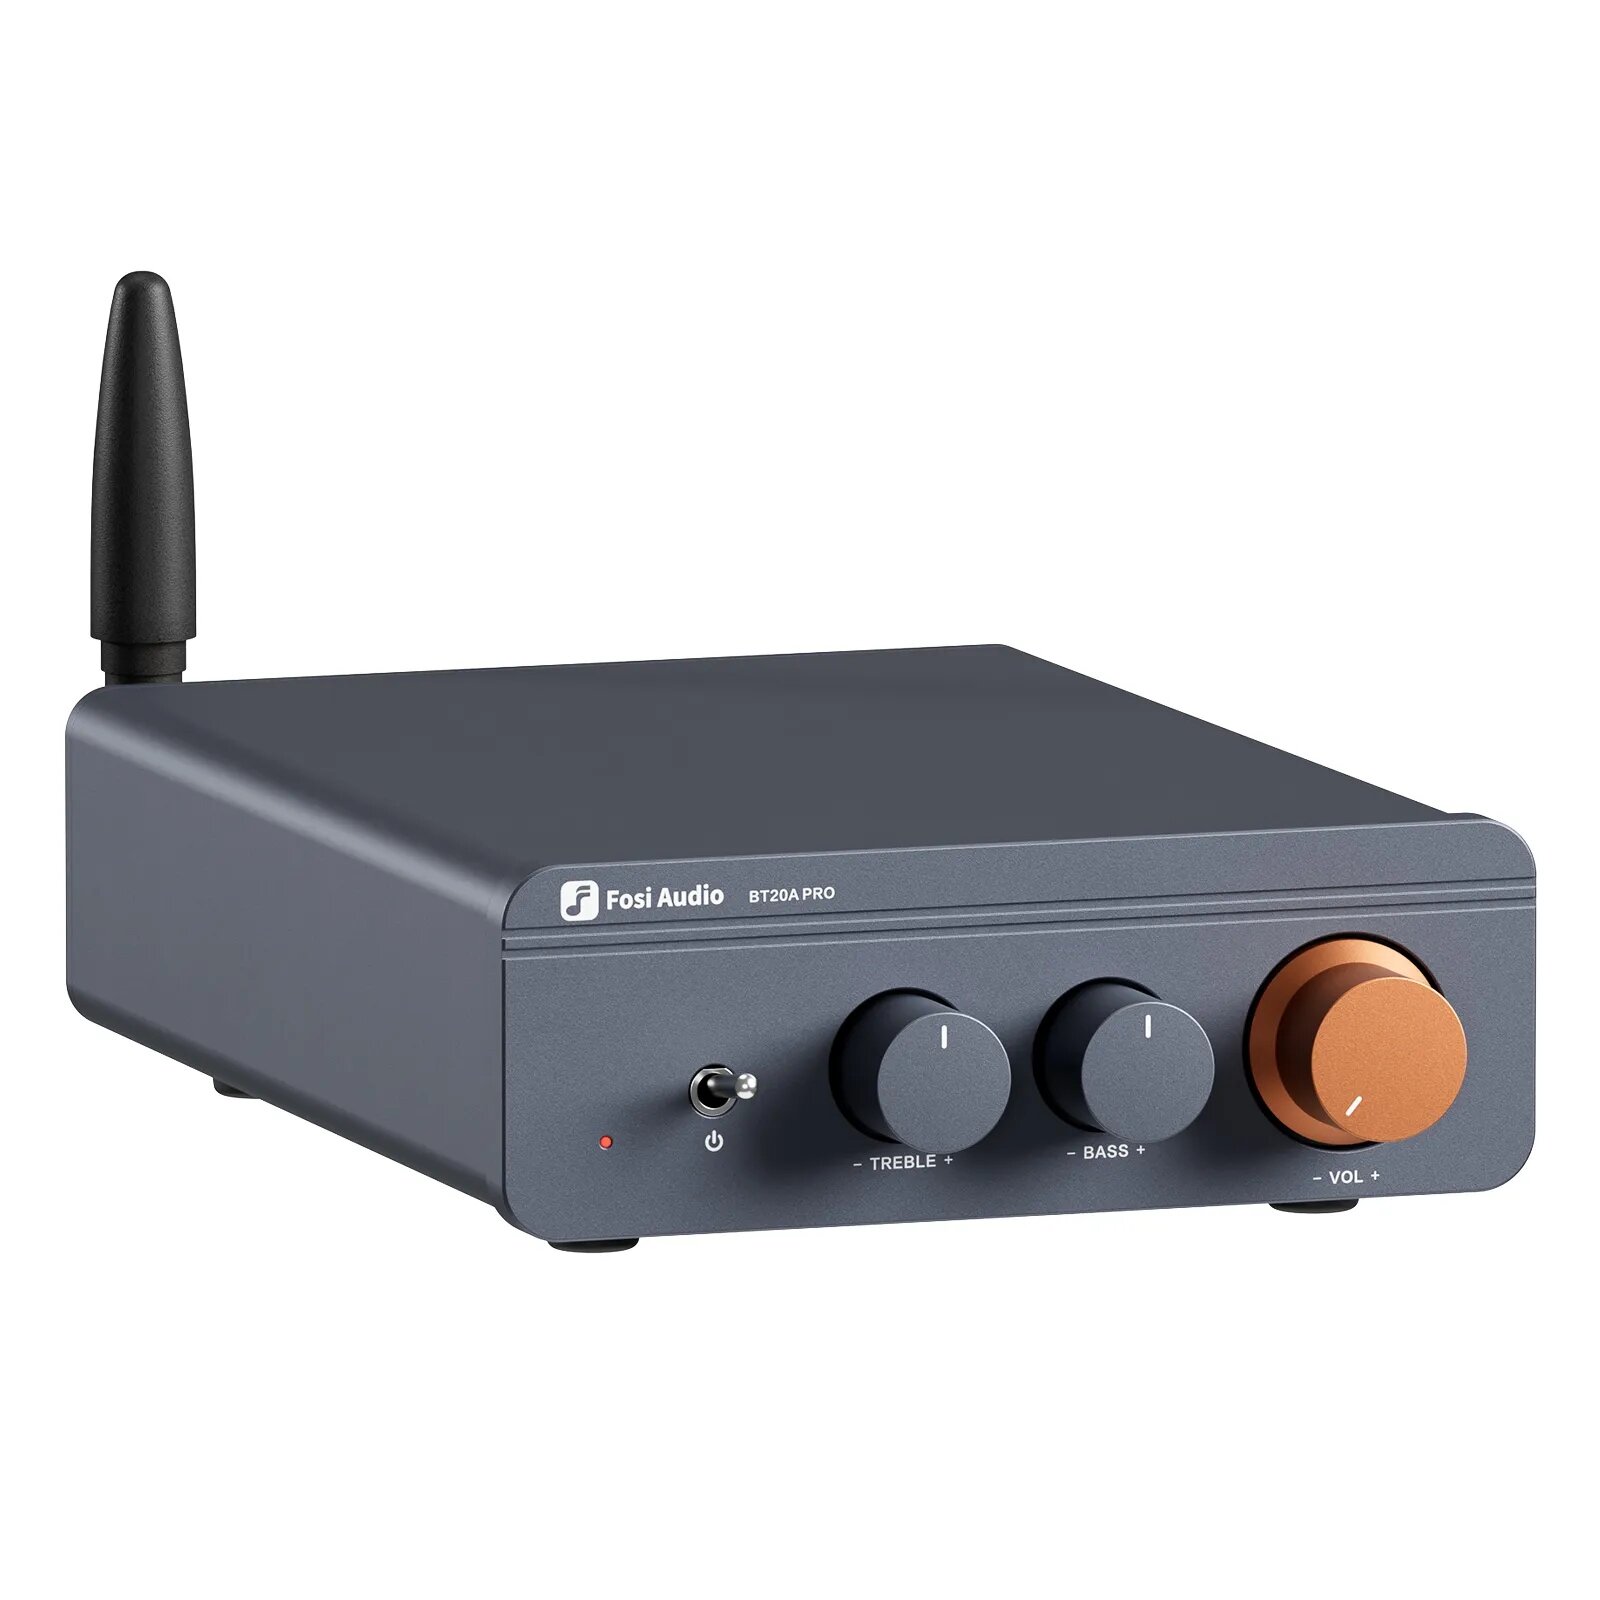 Усилитель для колонок Fosi Audio BT20A Pro 300 Вт с блоком питания 32В/5А